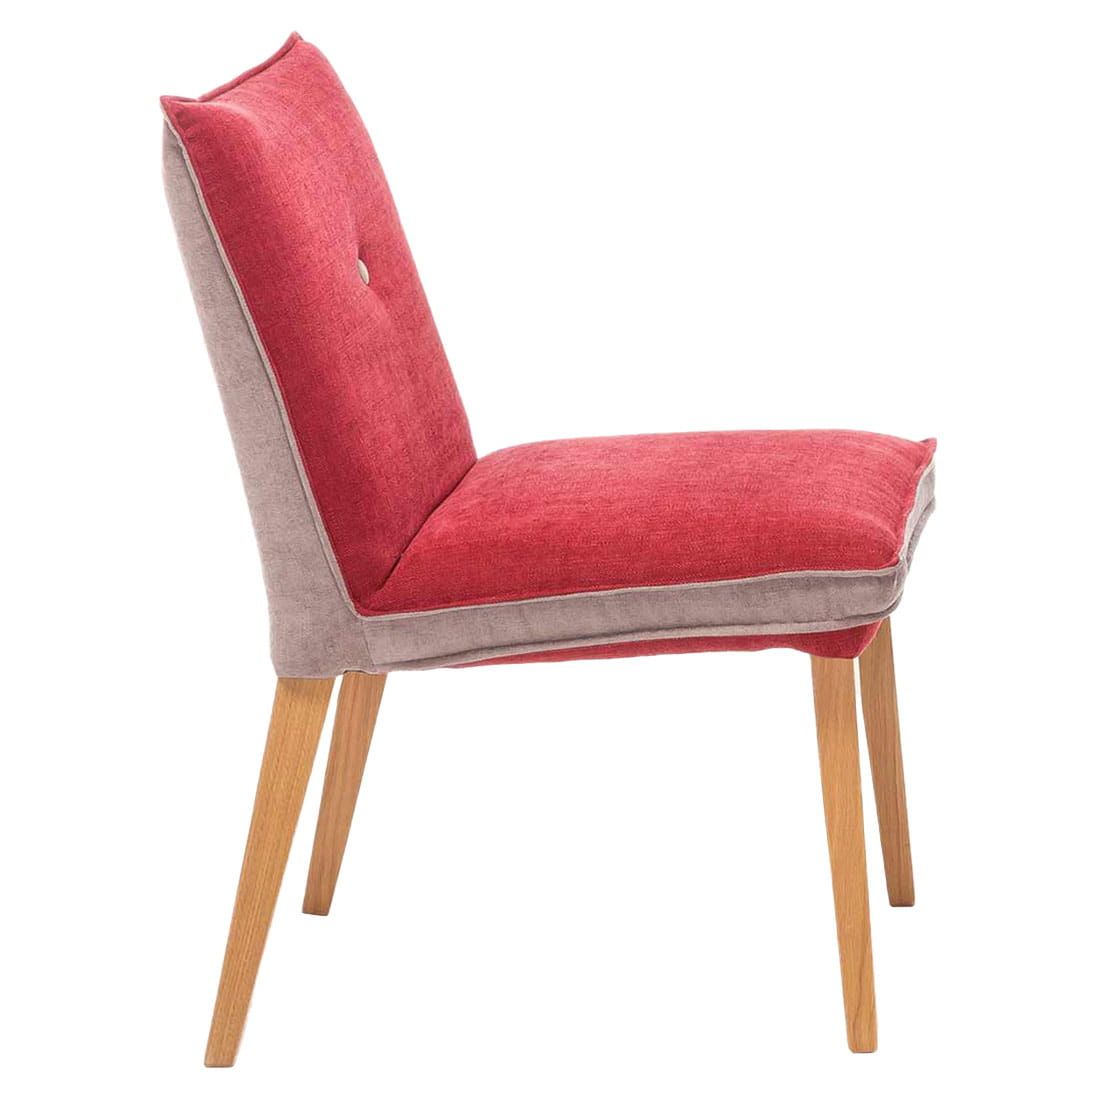 Standard Furniture Genua Stuhl Rot/Beige/Eiche Natur